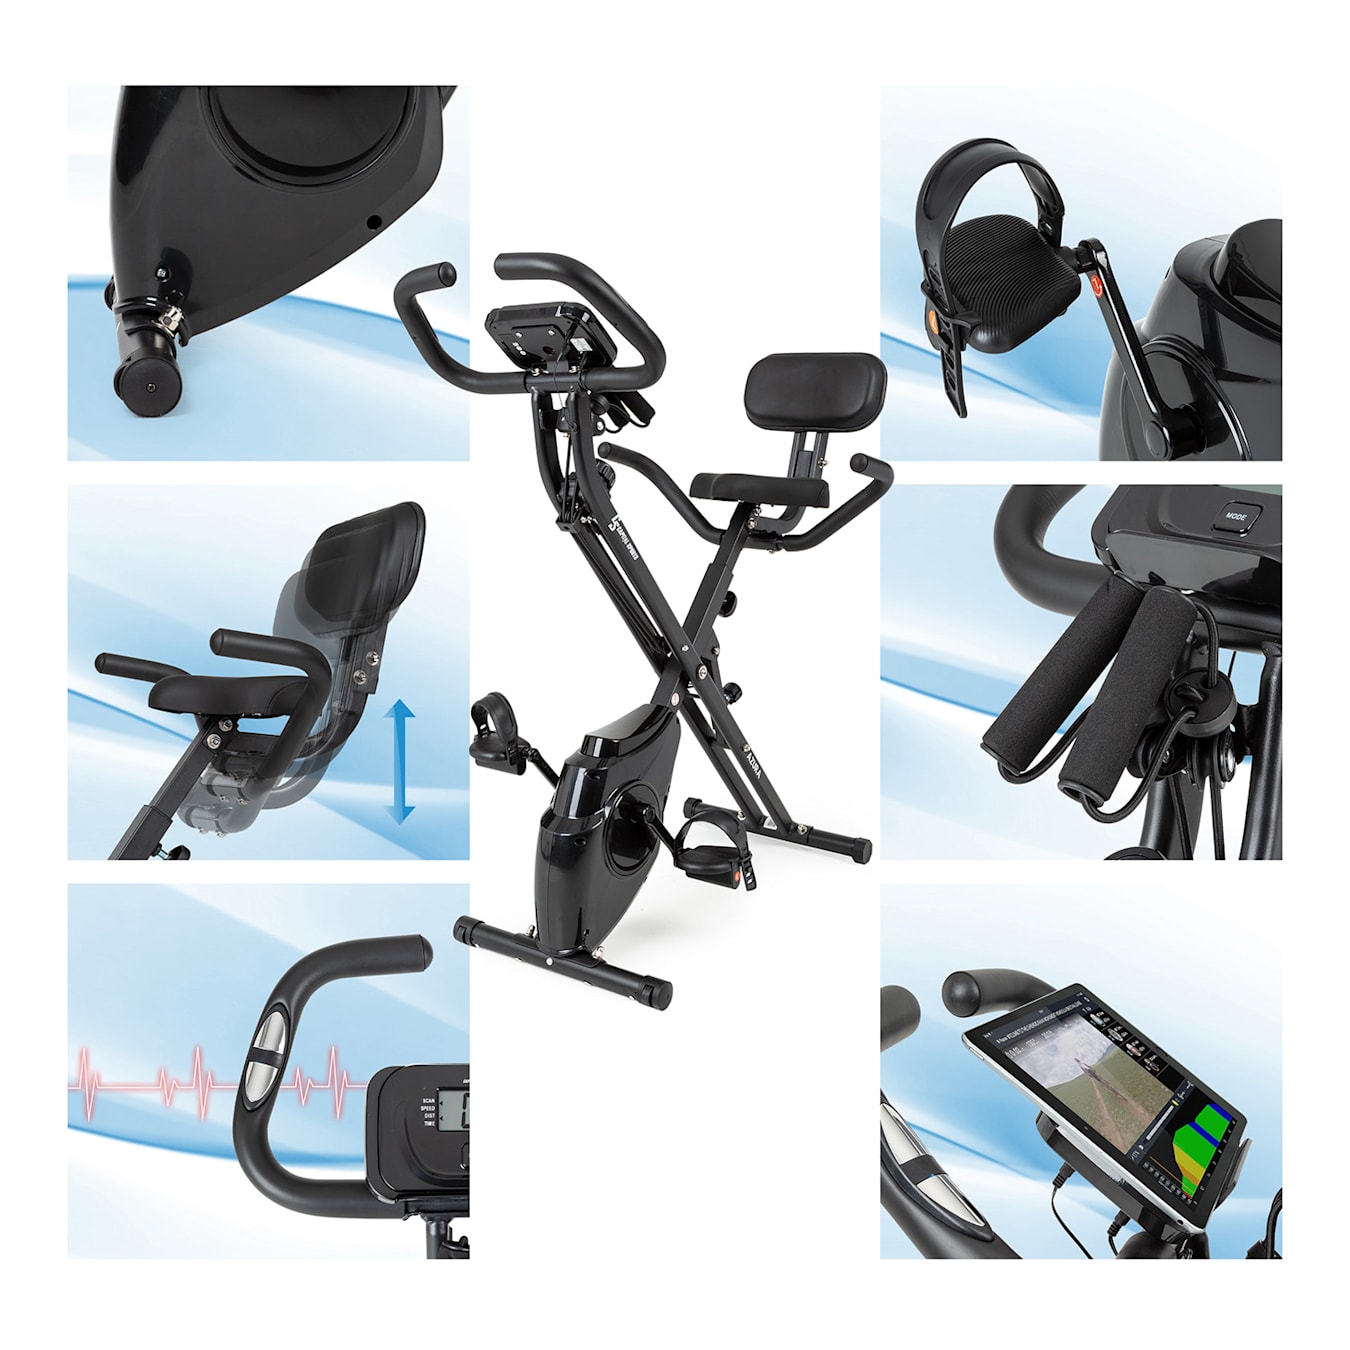 Zware vrachtwagen Chip zwaard Azura M3 Pro Connected hometrainer | riemaandrijving met SilentBelt systeem  | 2 zitopties: x-Bike en relaxbike | magneetweerstand (8 standen) |  bluetooth & tablethouder | tot 100 kg | hartslagmeter 